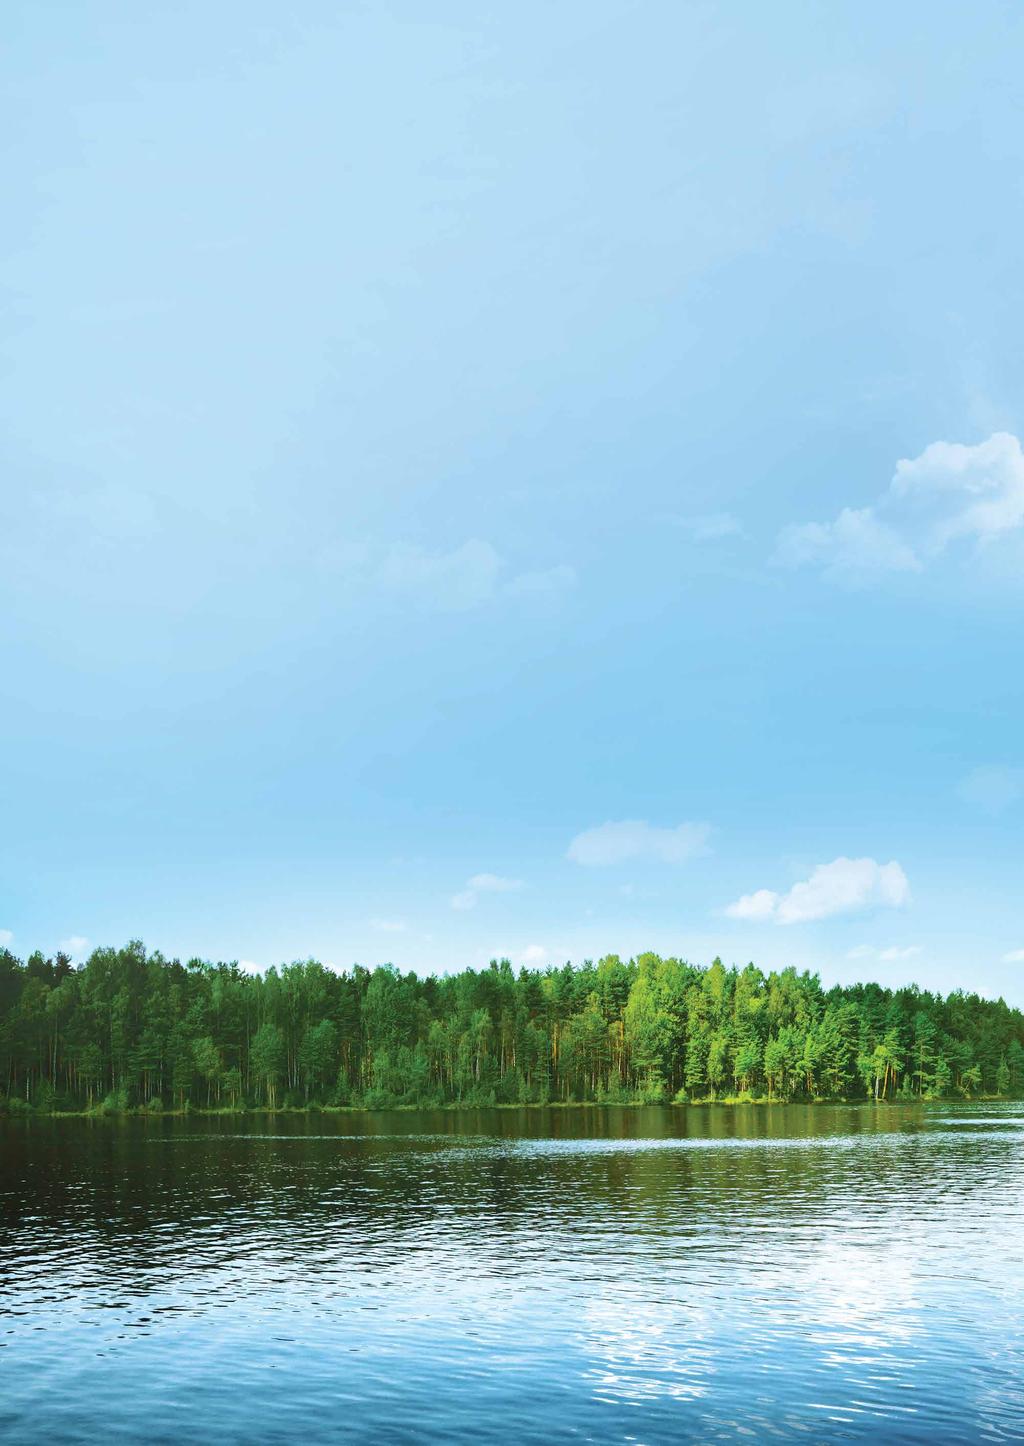 UB Metsä parempi tuotto metsäomaisuudelle Erikoissijoitusrahasto UB Metsän vahvuutena ovat ainutlaatuiset prosessit sekä metsäomaisuuden ammattimainen hoitaminen.